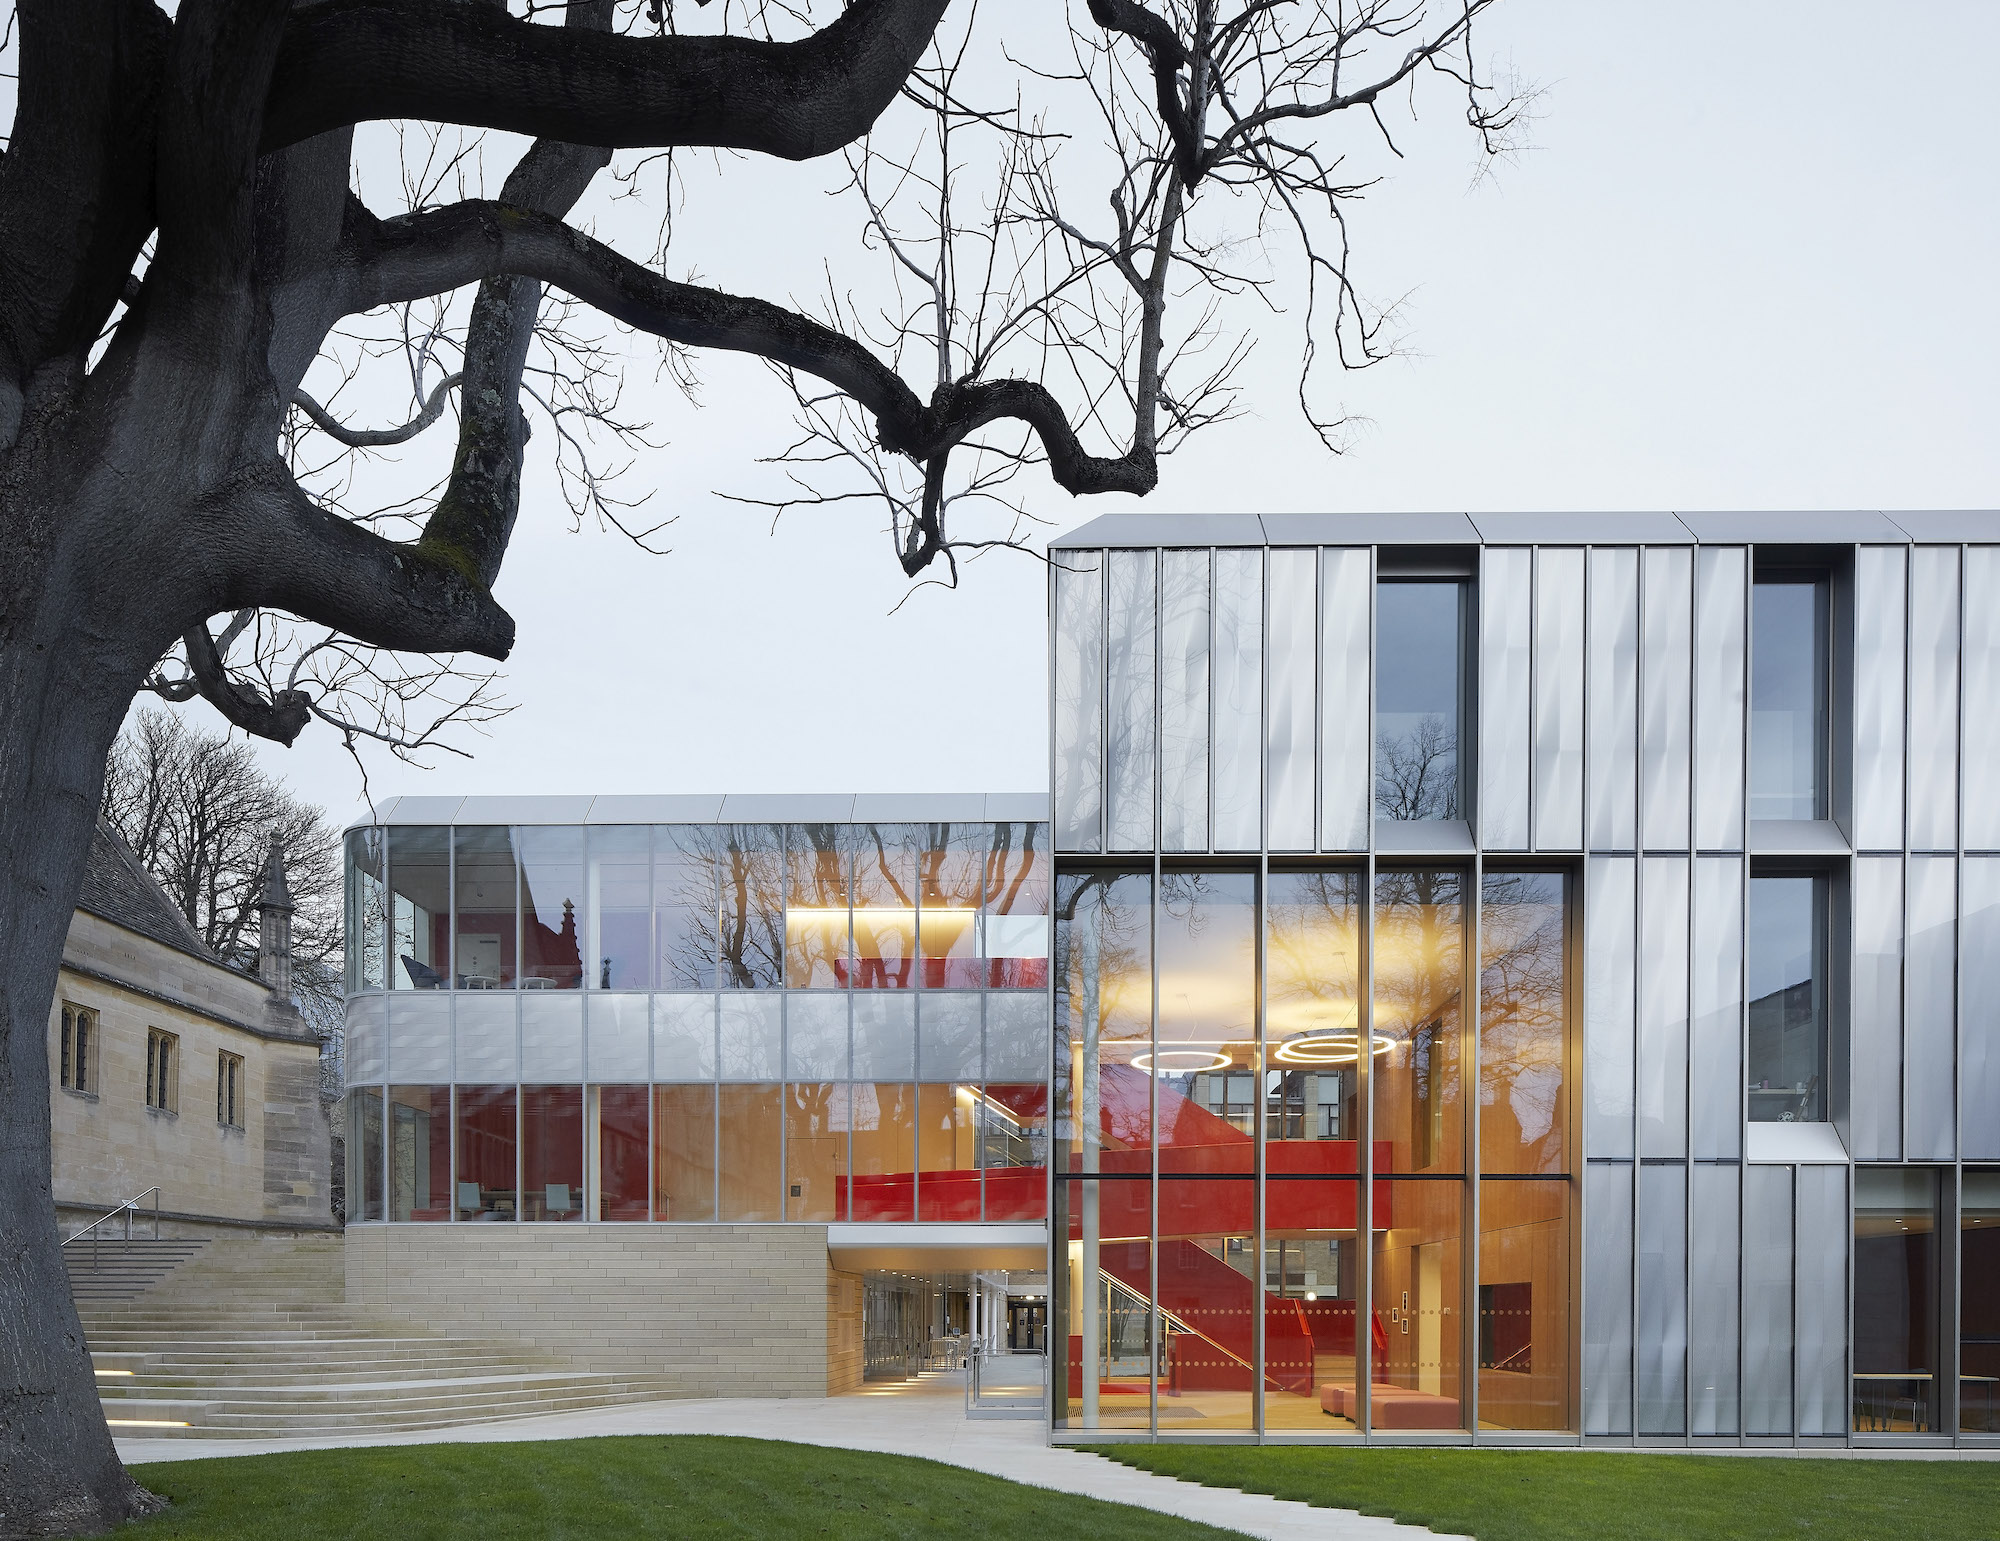 Amanda Levete Architects haben das traditionsreiche Wadham College in Oxford um einen neuen Hof ergänzt. Sie setzten zwei kompromisslos moderne Flügelbauten neben den gotischen Gründungsbau. Das Signal: Das College ist im 21. Jahrhundert angekommen.